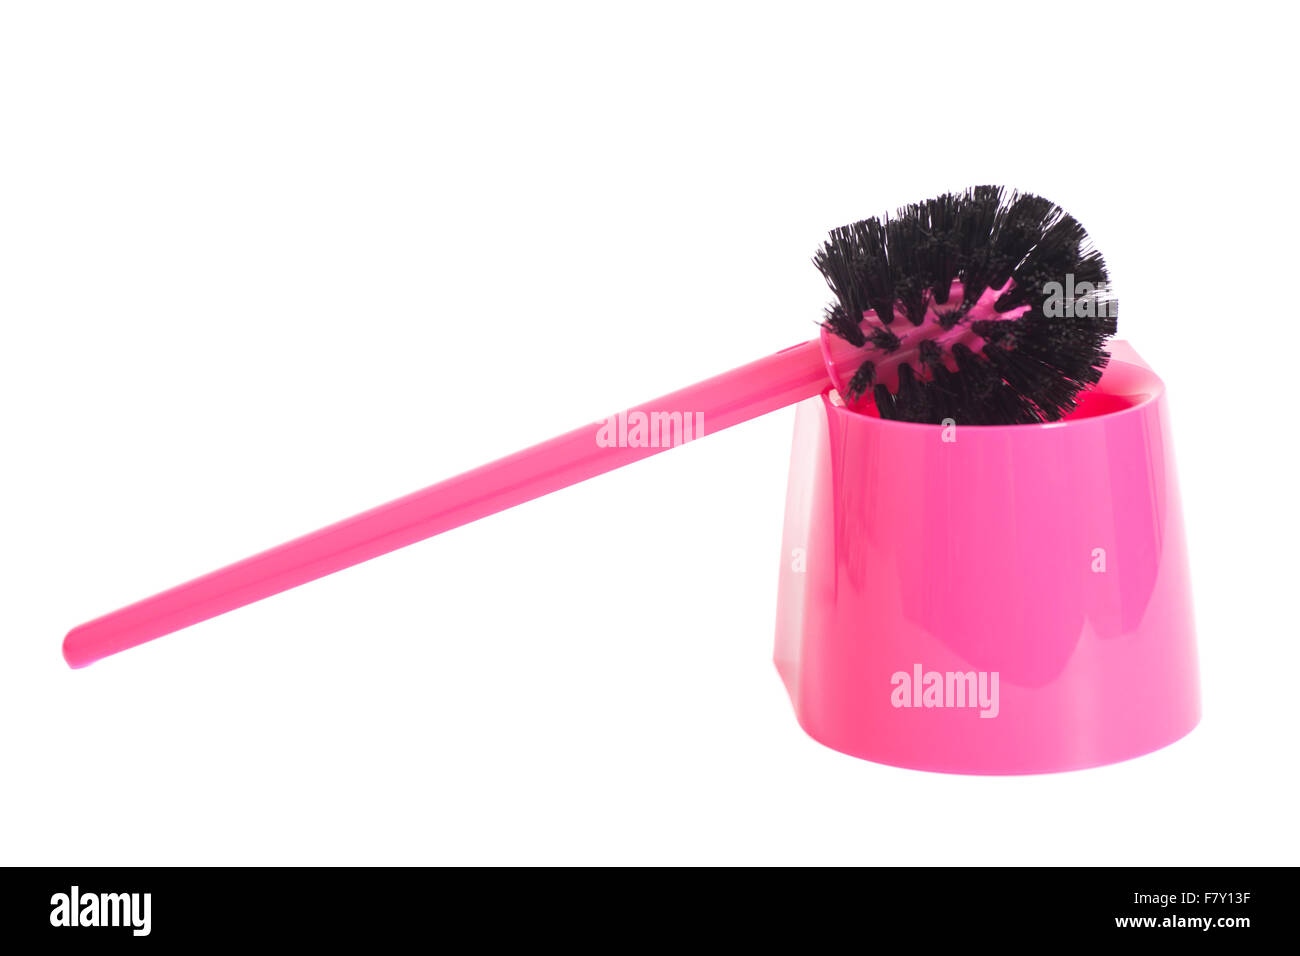 Pink Toilet brush isolated on white background Stock Photo